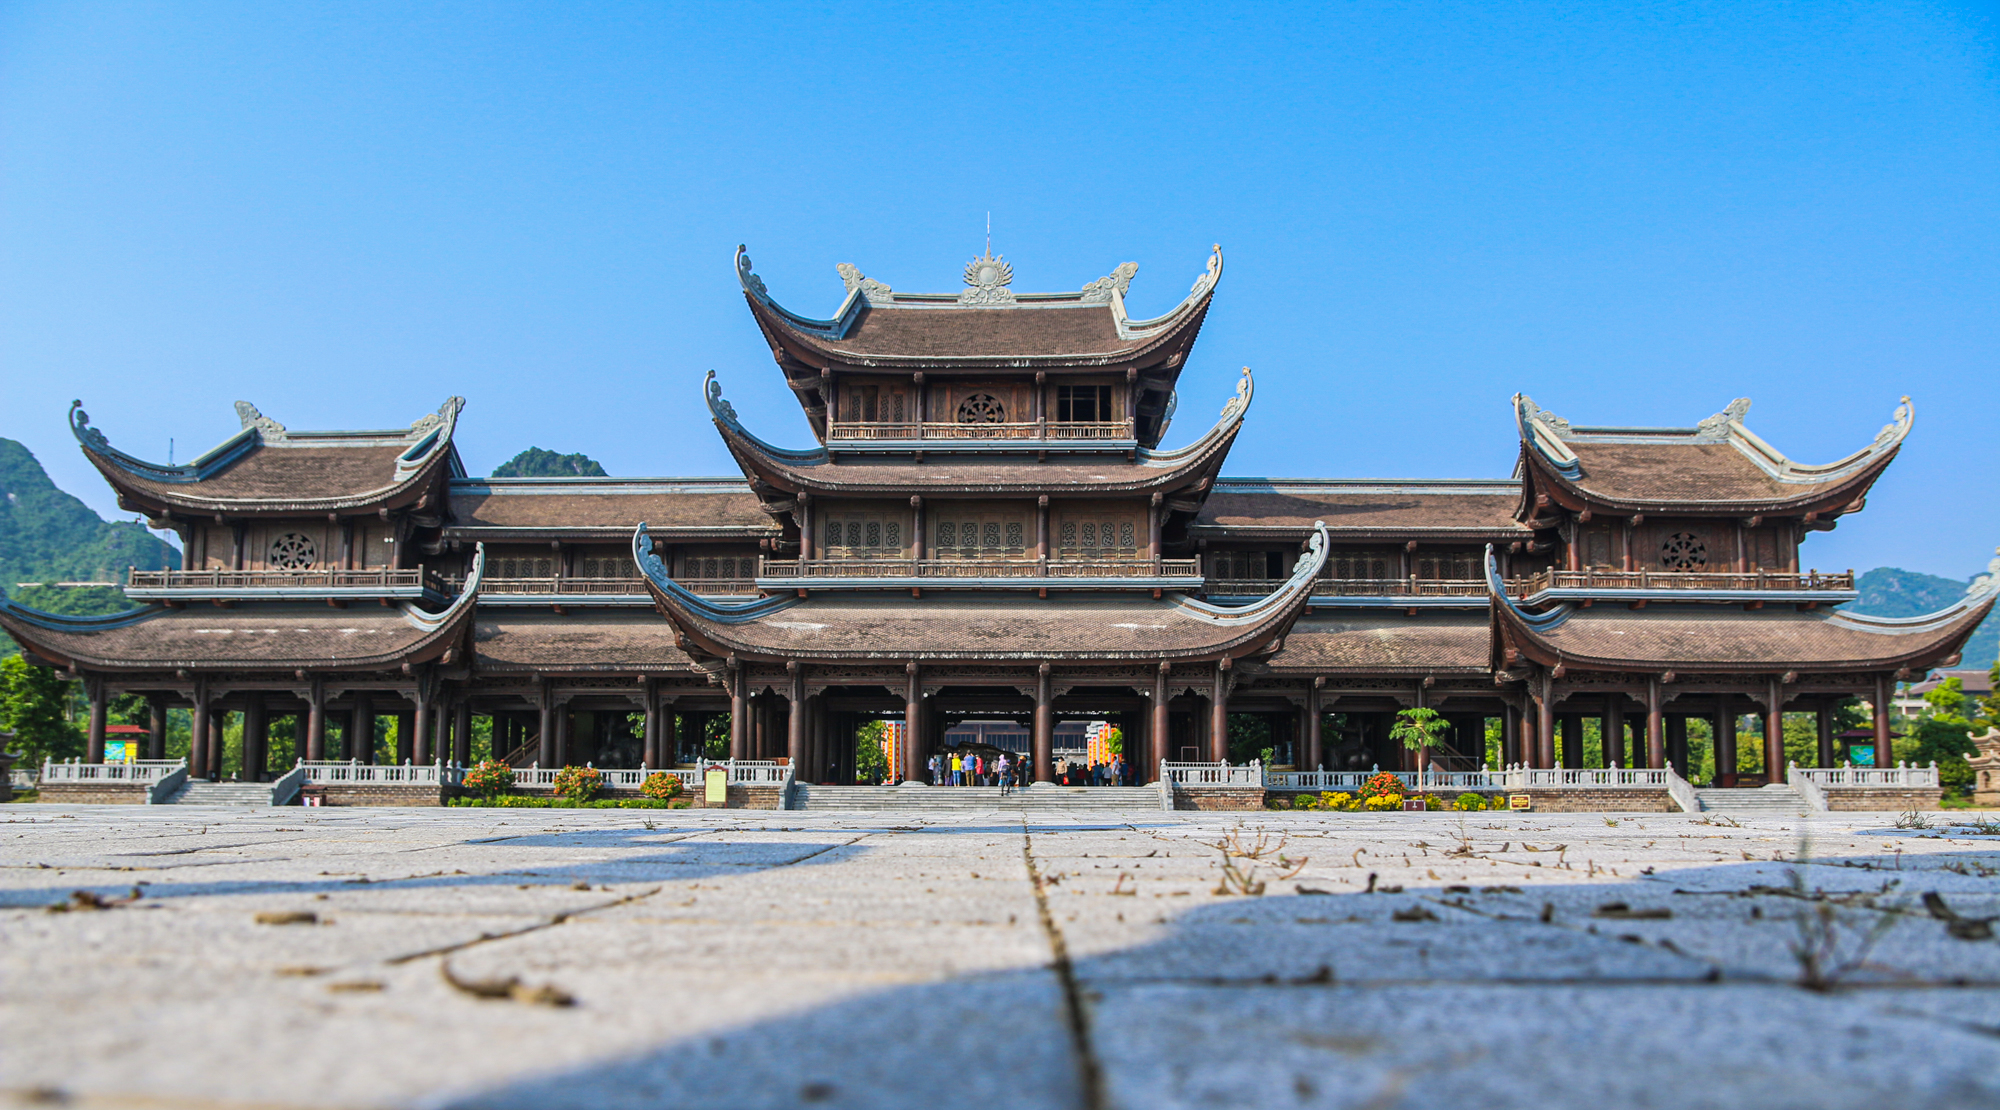 Ngôi chùa rộng gấp 10 lần quận Hoàn Kiếm, xây nửa thế kỷ mới xong - Ảnh 2.